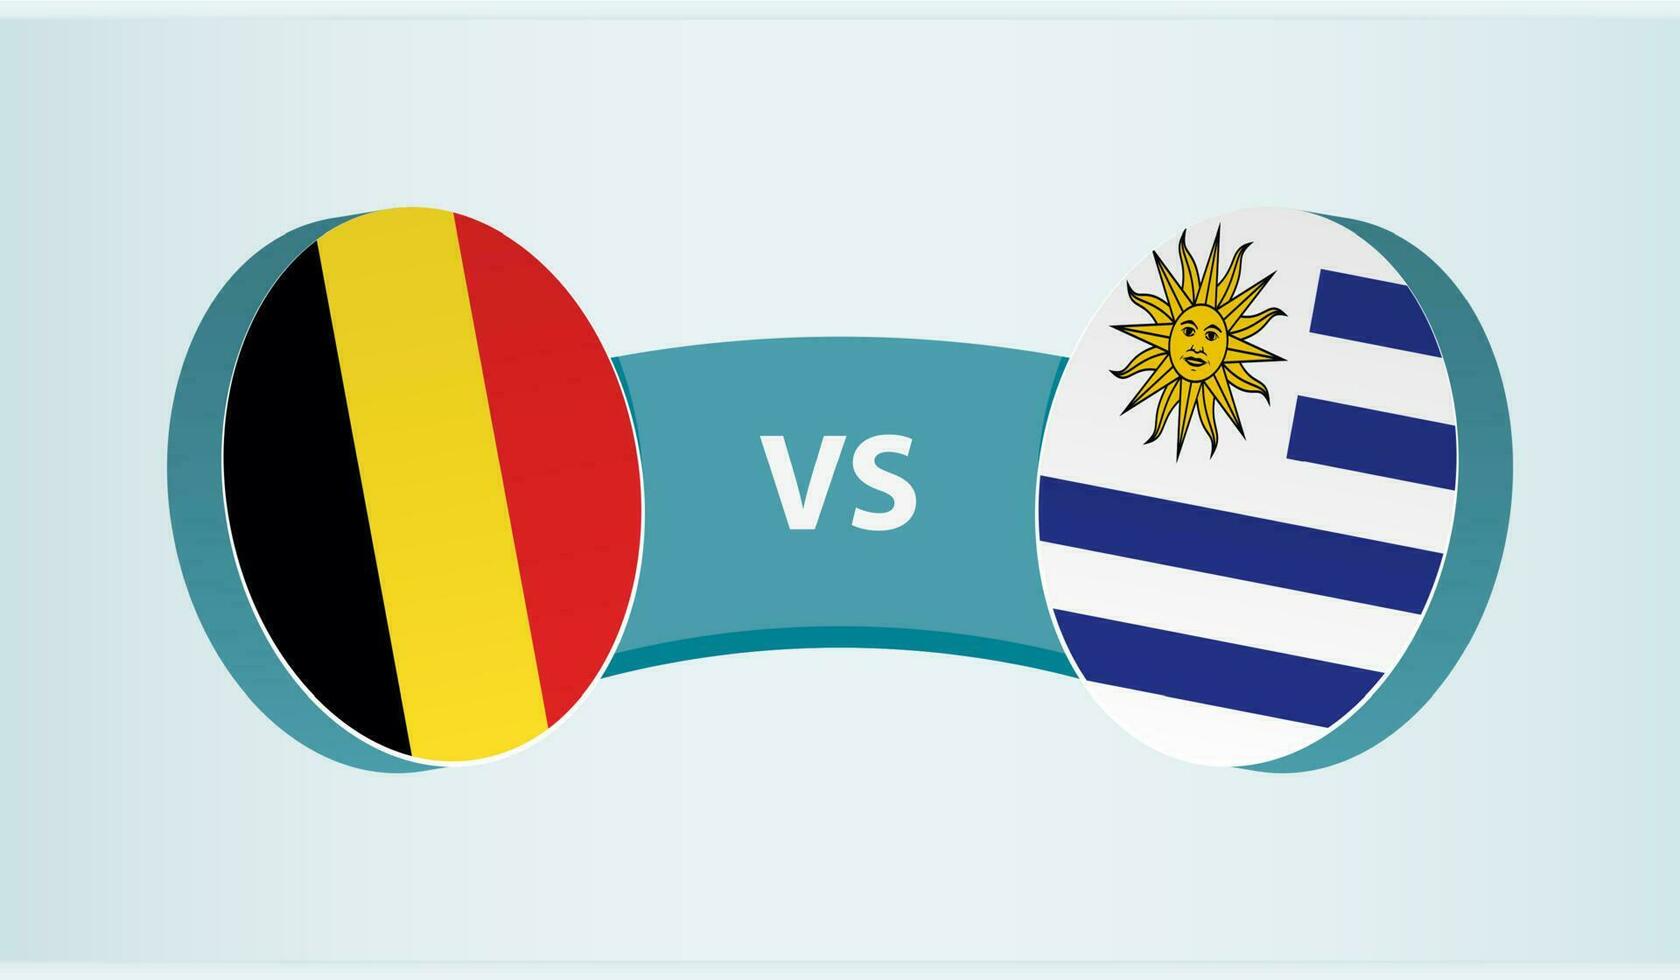 Belgium versus Uruguay, team sports competition concept. vector